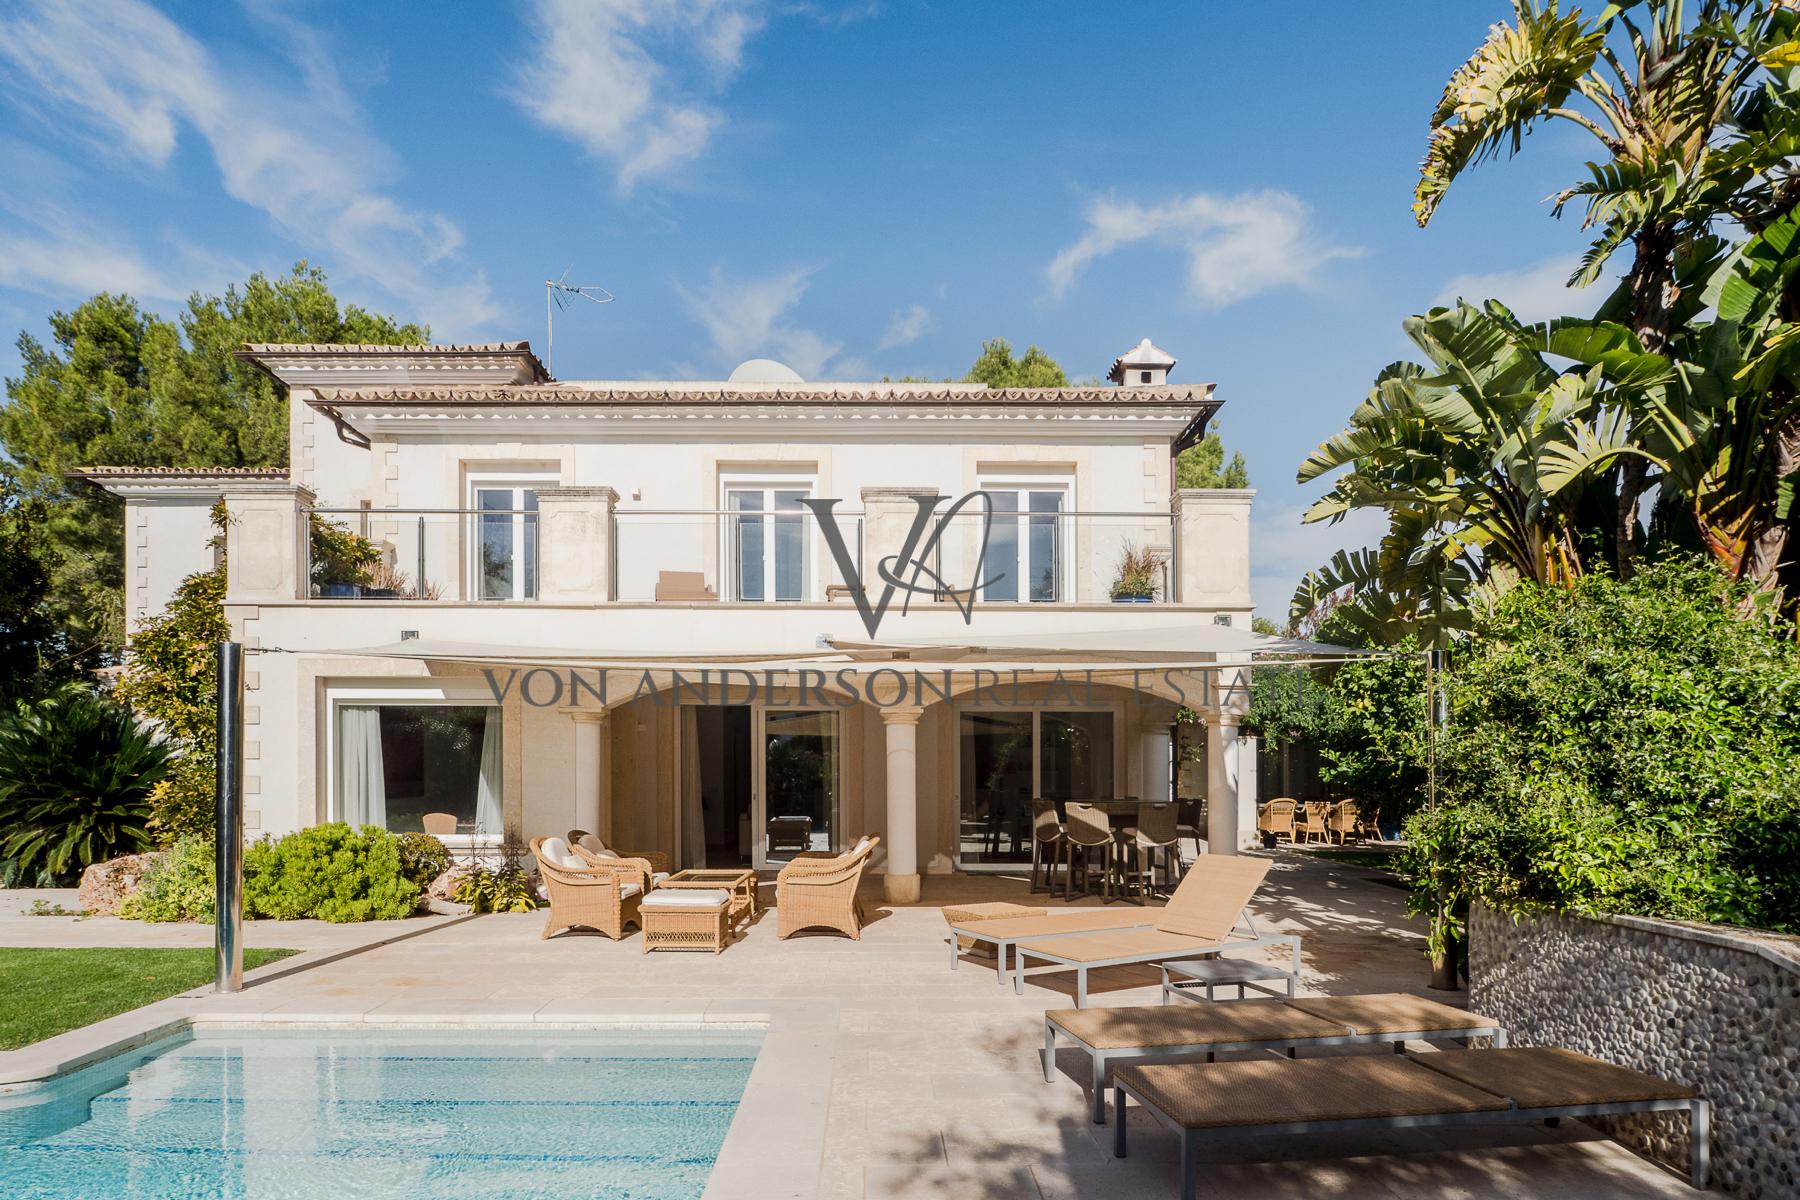 Contemporary Mediterranean Villa Perfect for Families Located in Santa Ponsa, ref. VA1046, for sale in Mallorca by Von Anderson Real Estate